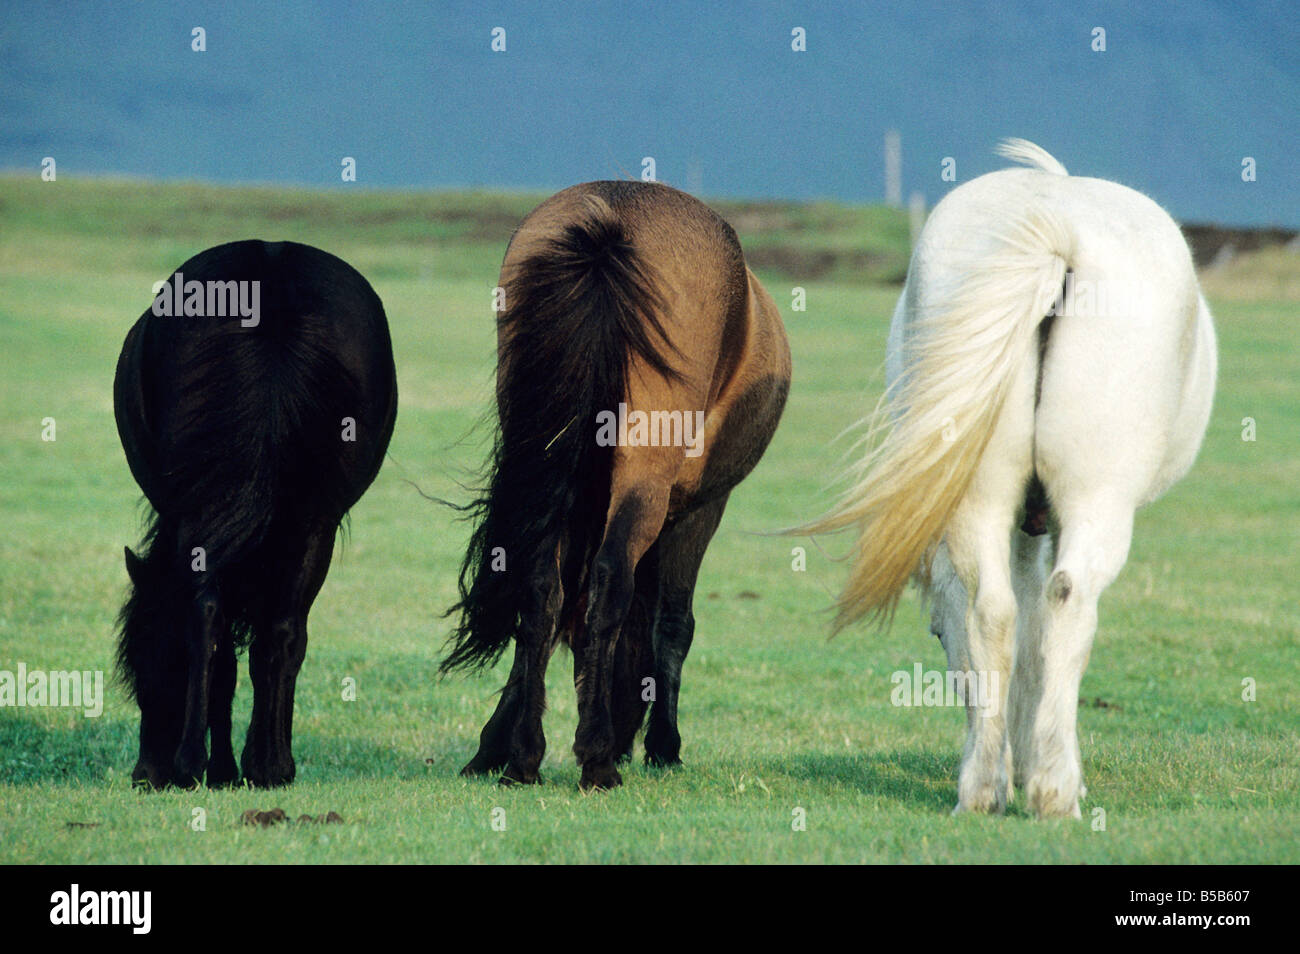 Cheval islandais (Equus caballus), trois individus de pâturage de couleur différente vu de derrière Banque D'Images